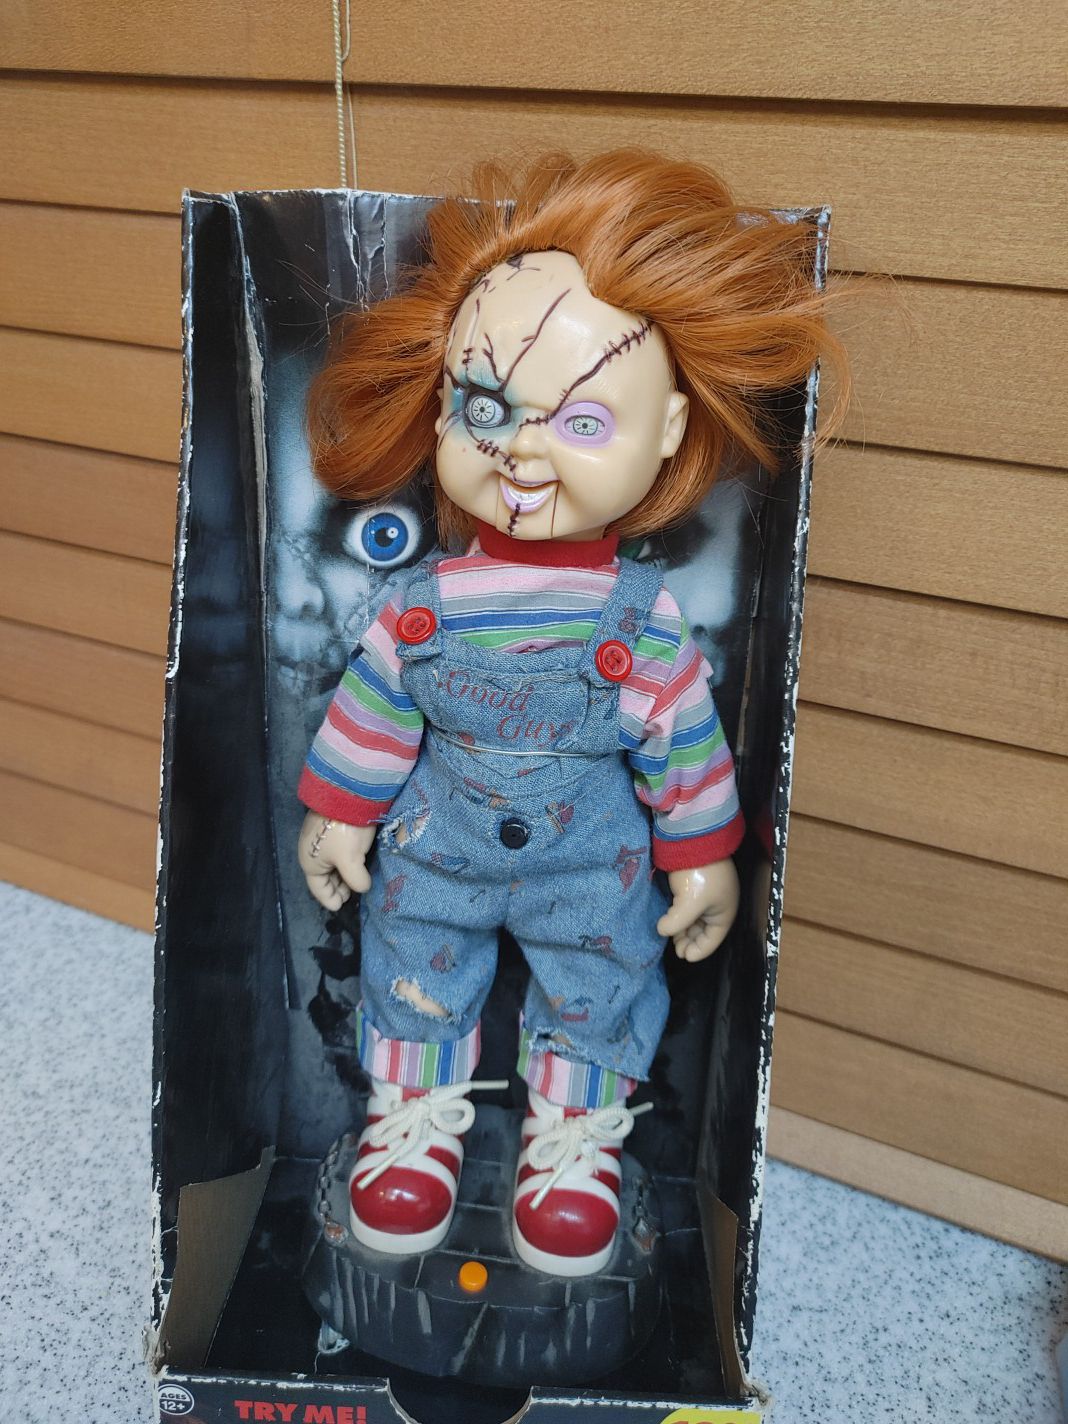 Bride of Chucky doll still in original packaging